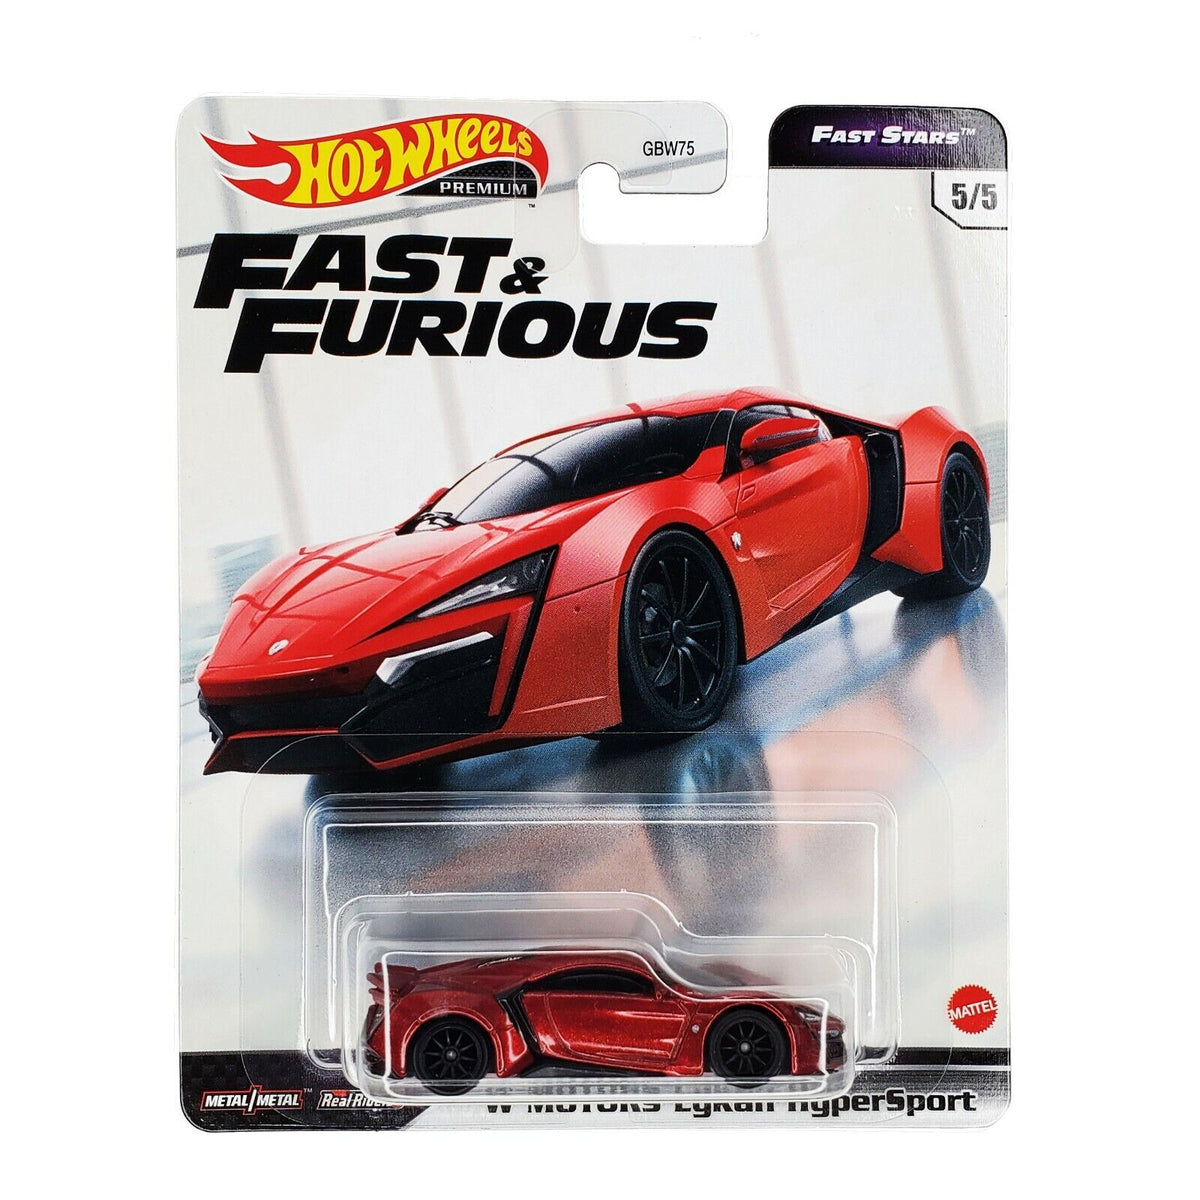 Hot Wheels Fast & Furious Premium Series, Lykan Hypersport